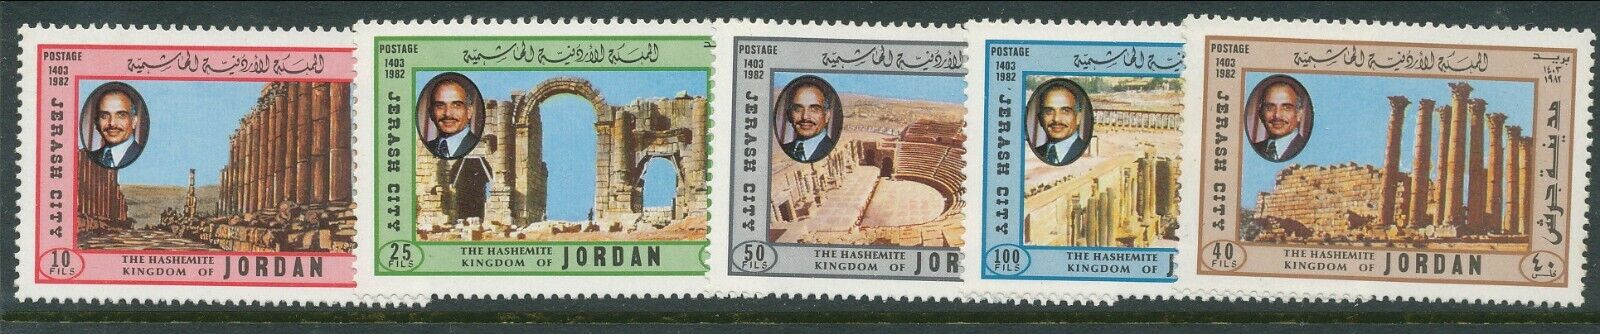 Jordania 1982 Rzymskie ruiny autorstwa Jerash MNH Set GB £4.50